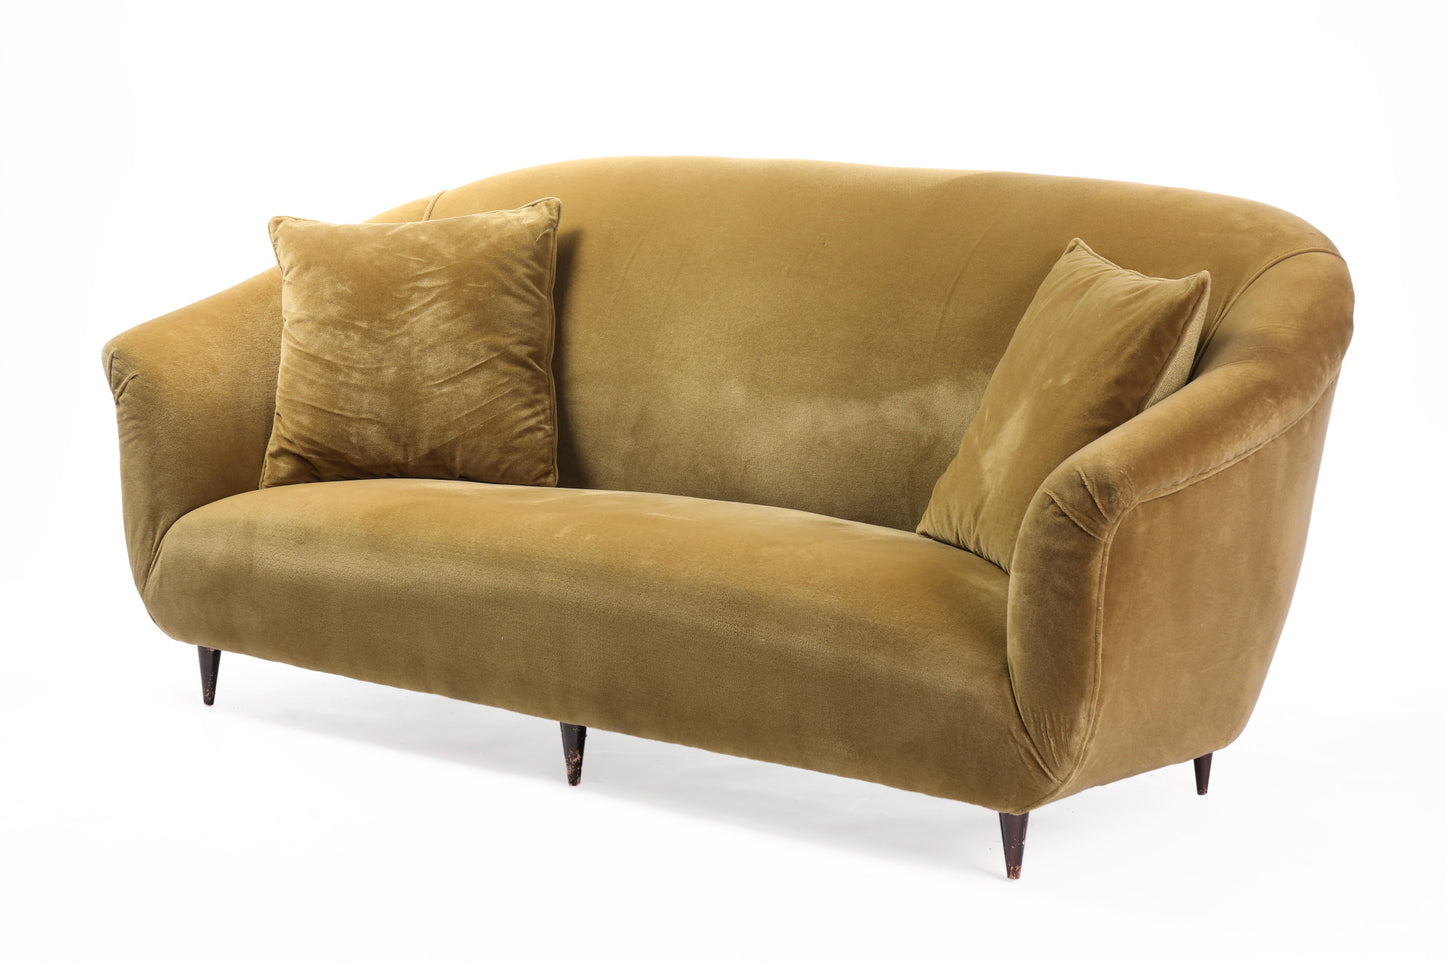 Olive green wool velvet two-seater sofa